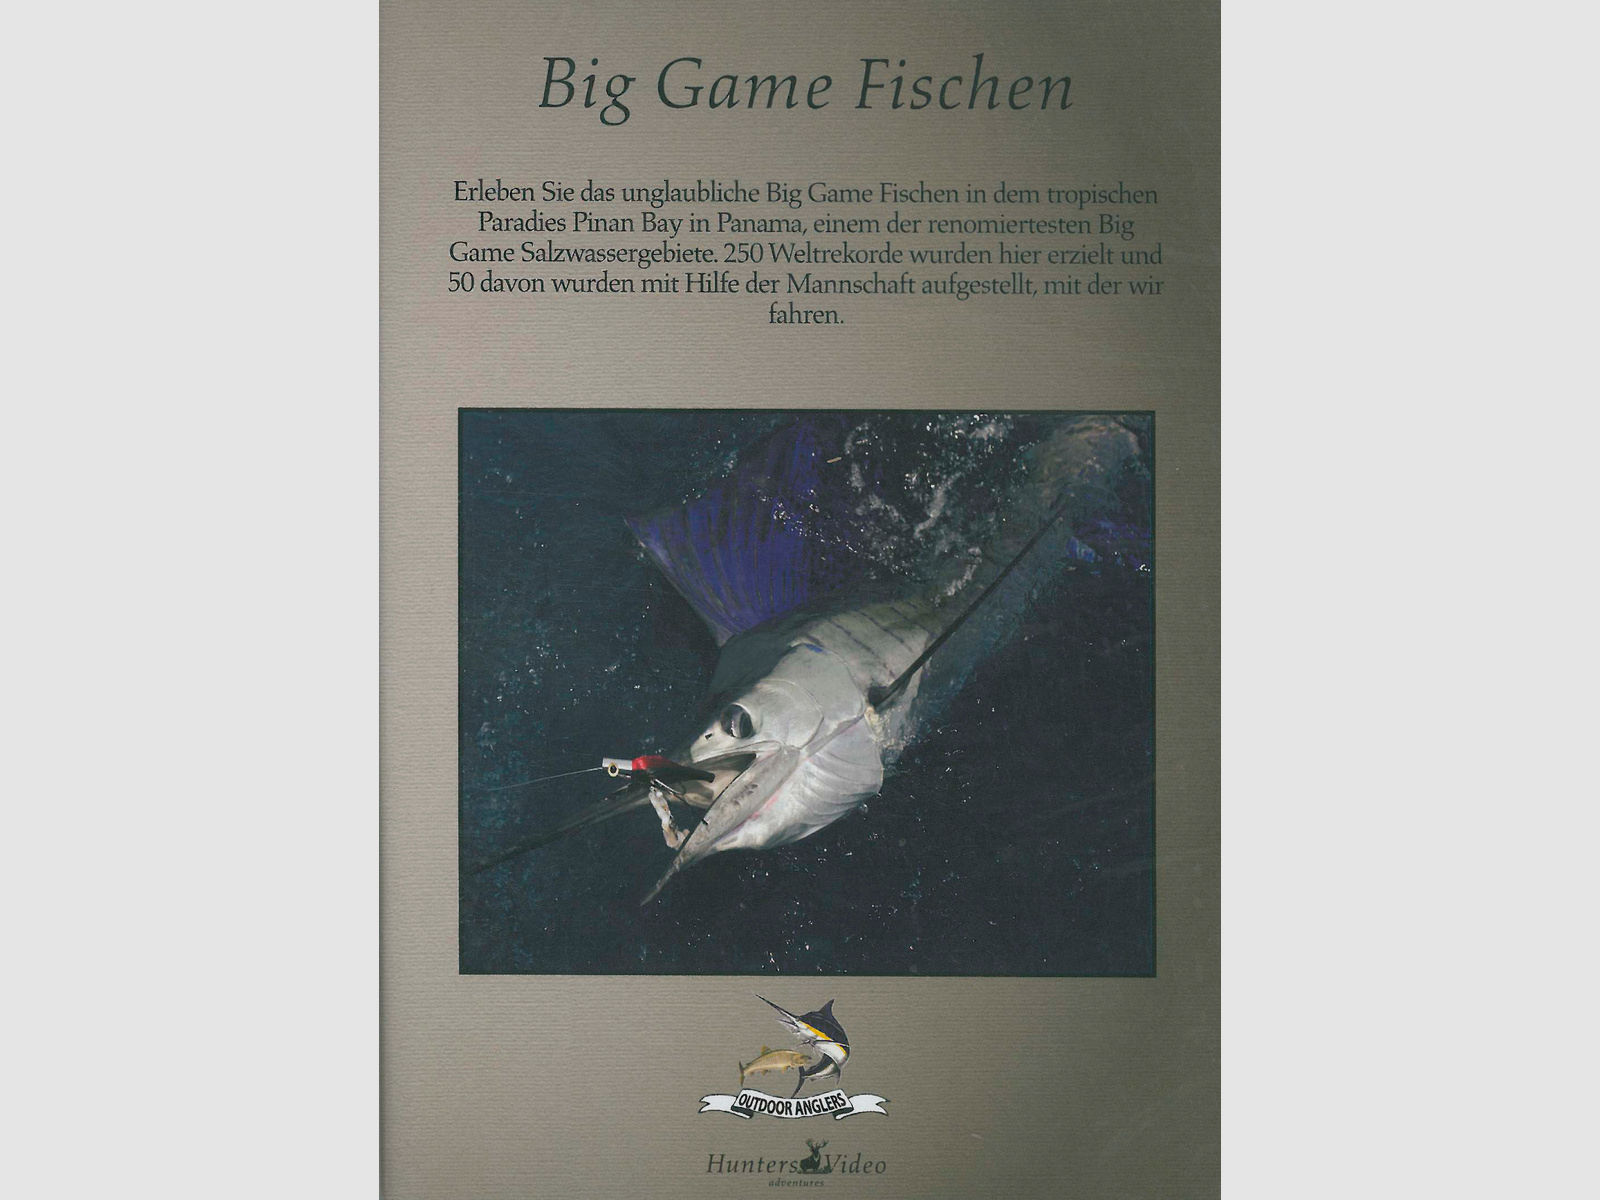 HuntersVideo, Big Game Fischen DVD